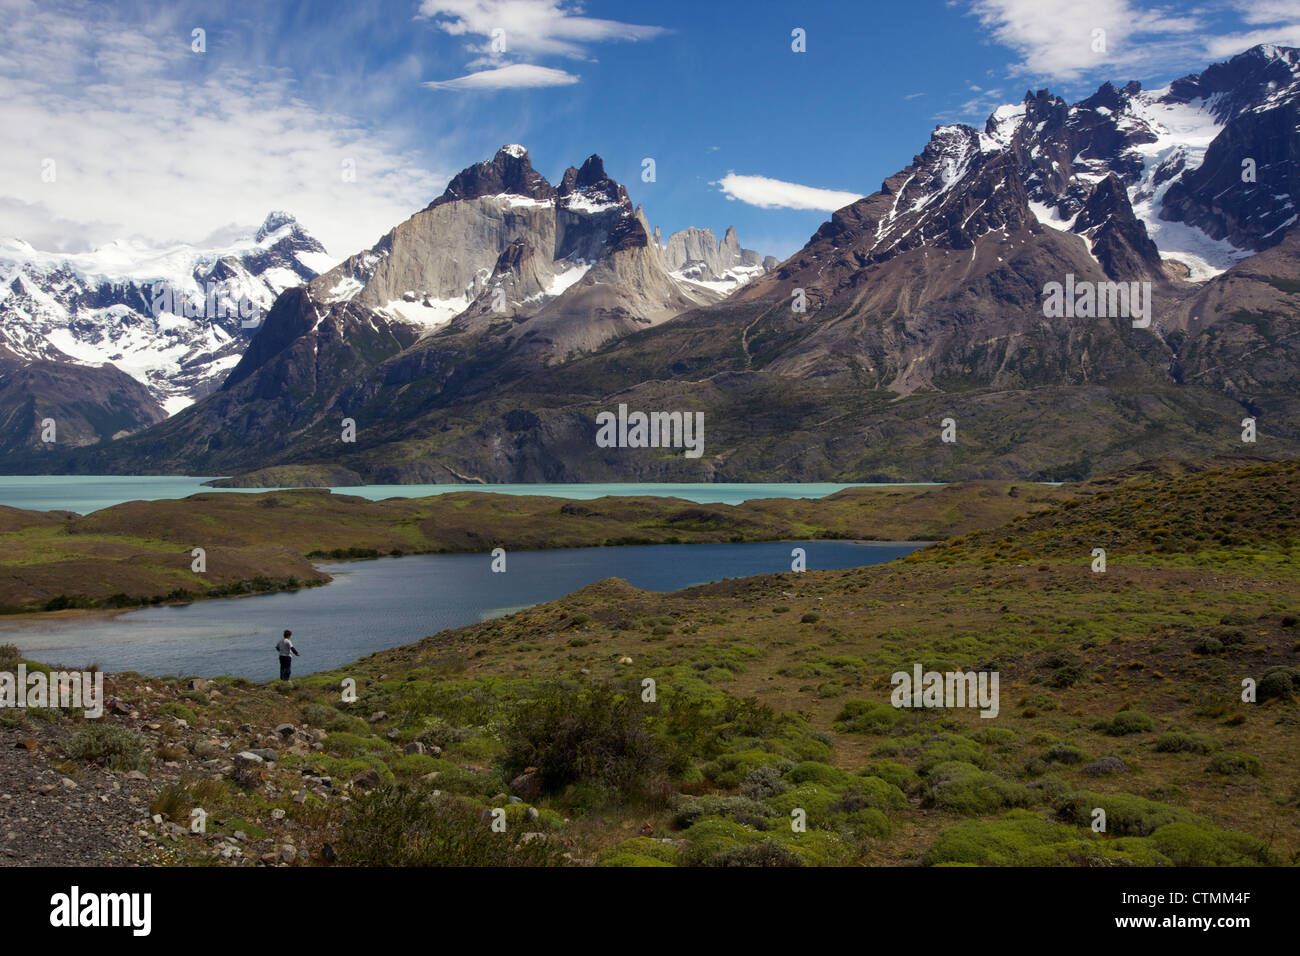 Vue de Los Cuernos sur le Lago Nordenskjold, Parc National Torres del Paine, Patagonie, Chili Banque D'Images